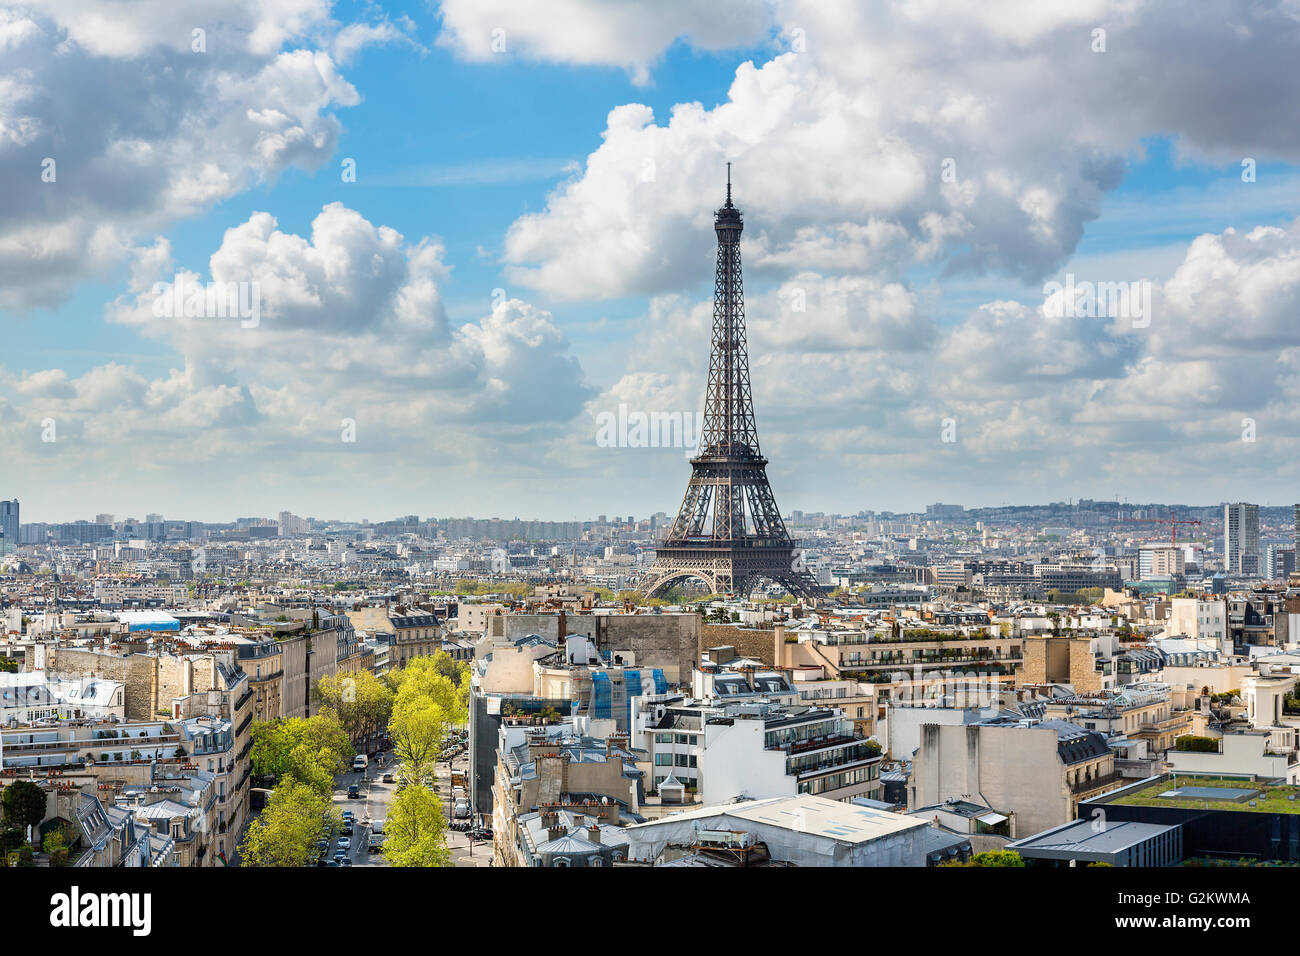 Paris, Vue Panoramique vue aérienne avec Eiffel tower Banque D'Images